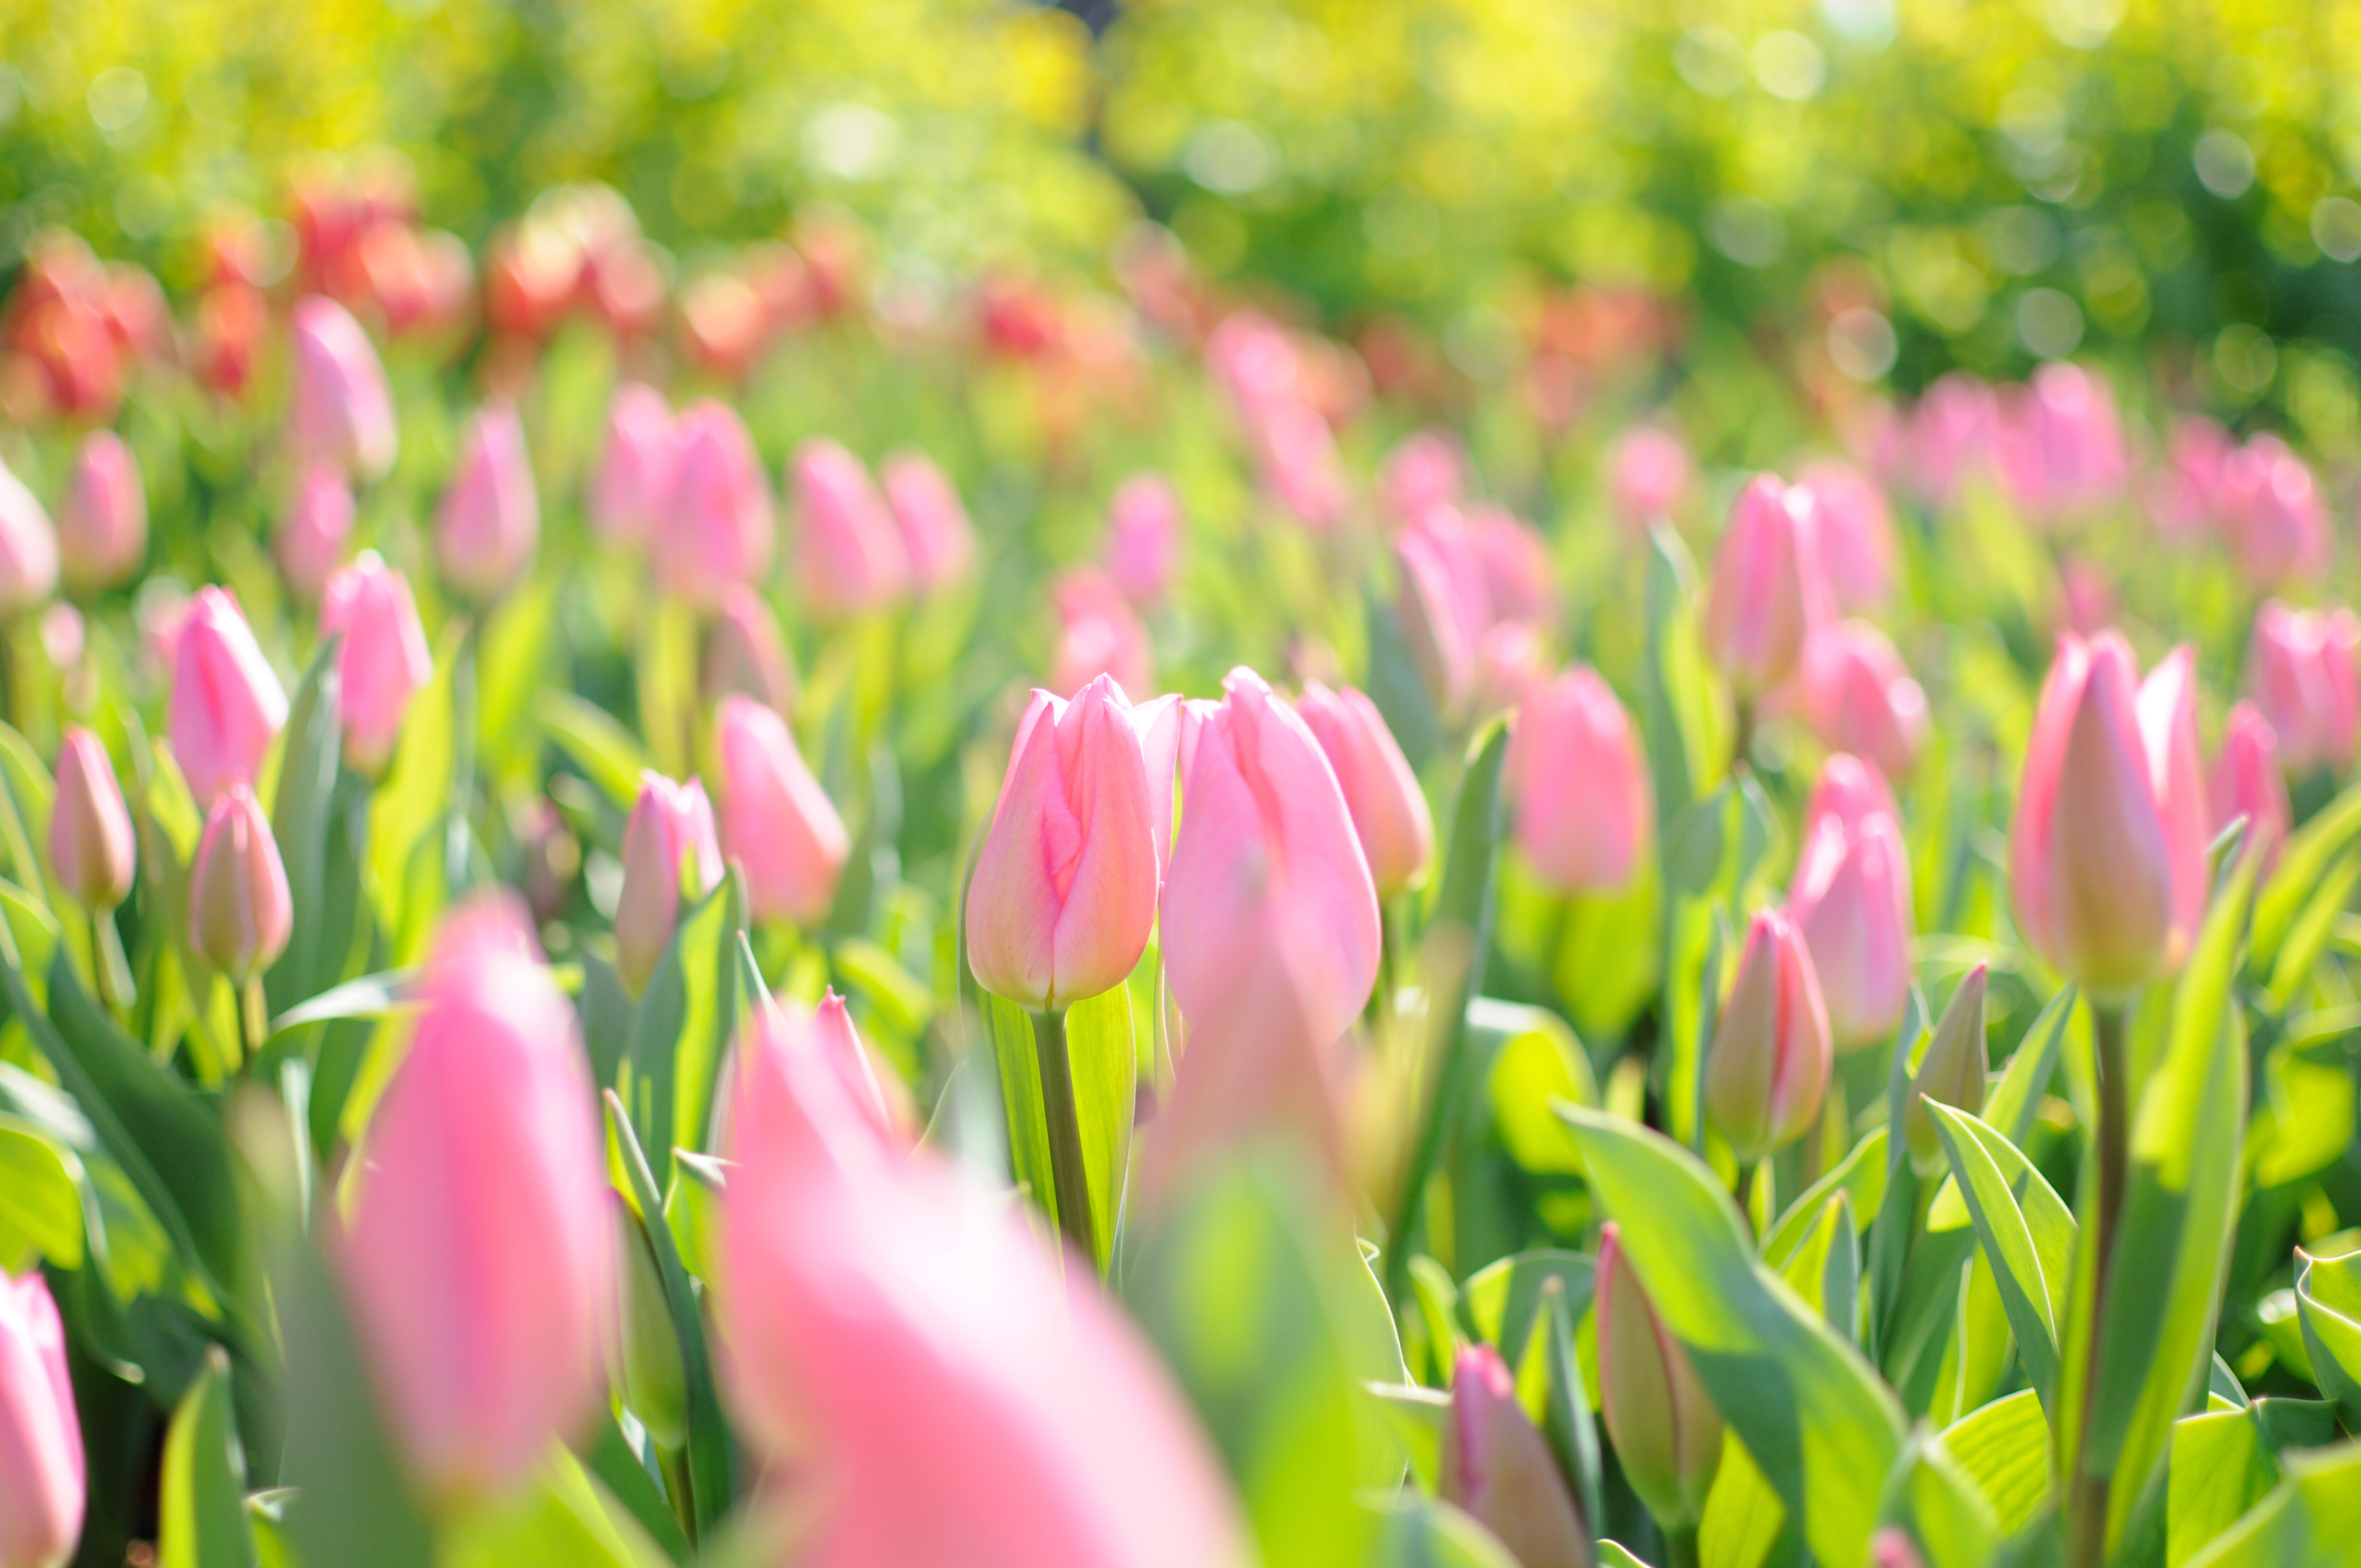 Картинки на заставку весенние цветы. Красивые весенние цветы. Весенние тюльпаны. Розовые тюльпаны.